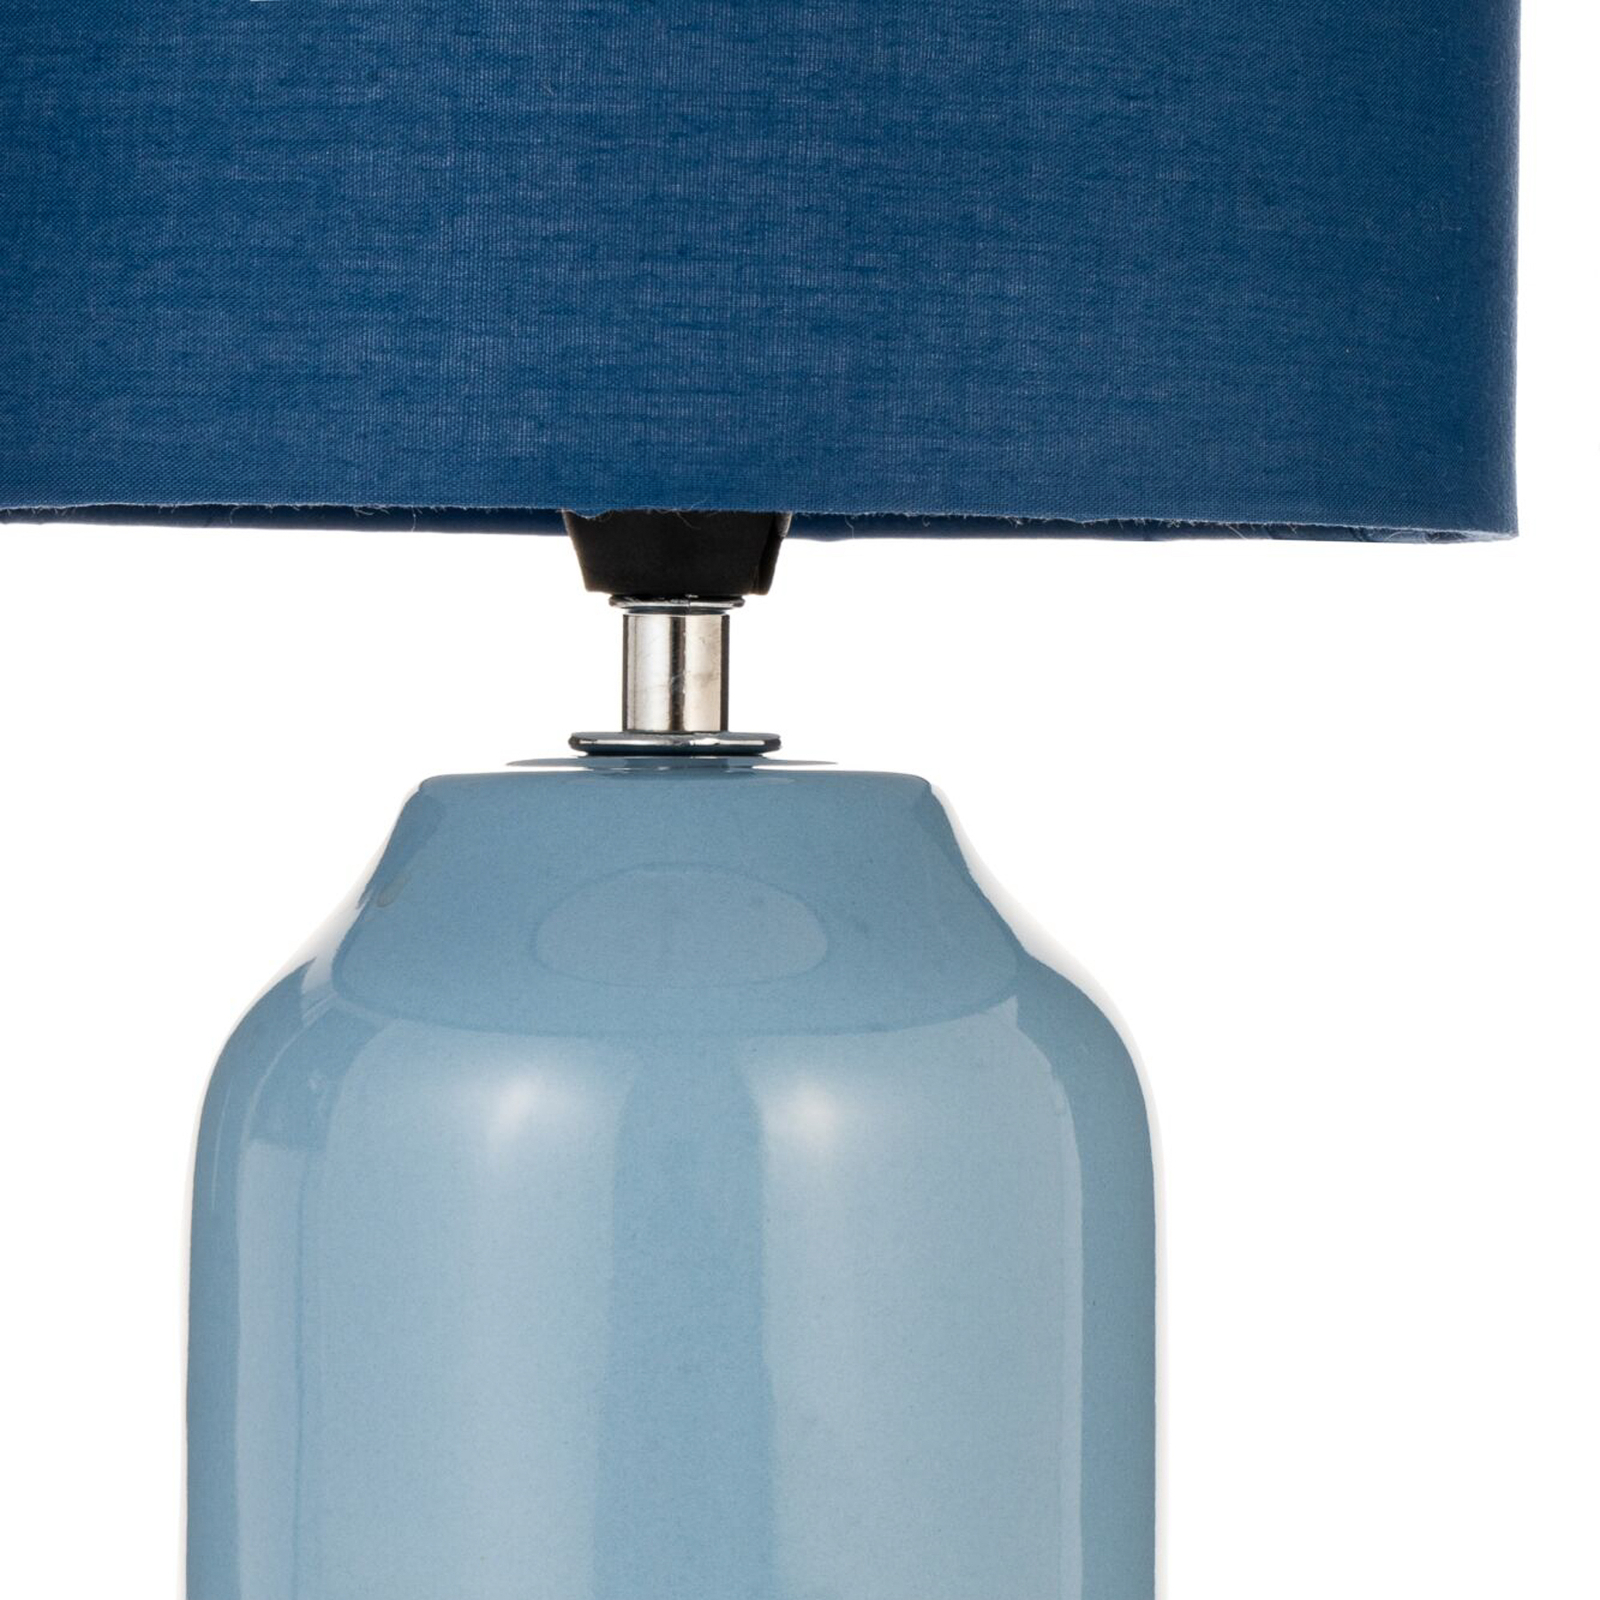 Pauleen Sandy Glow lampe à poser, bleue/bleue